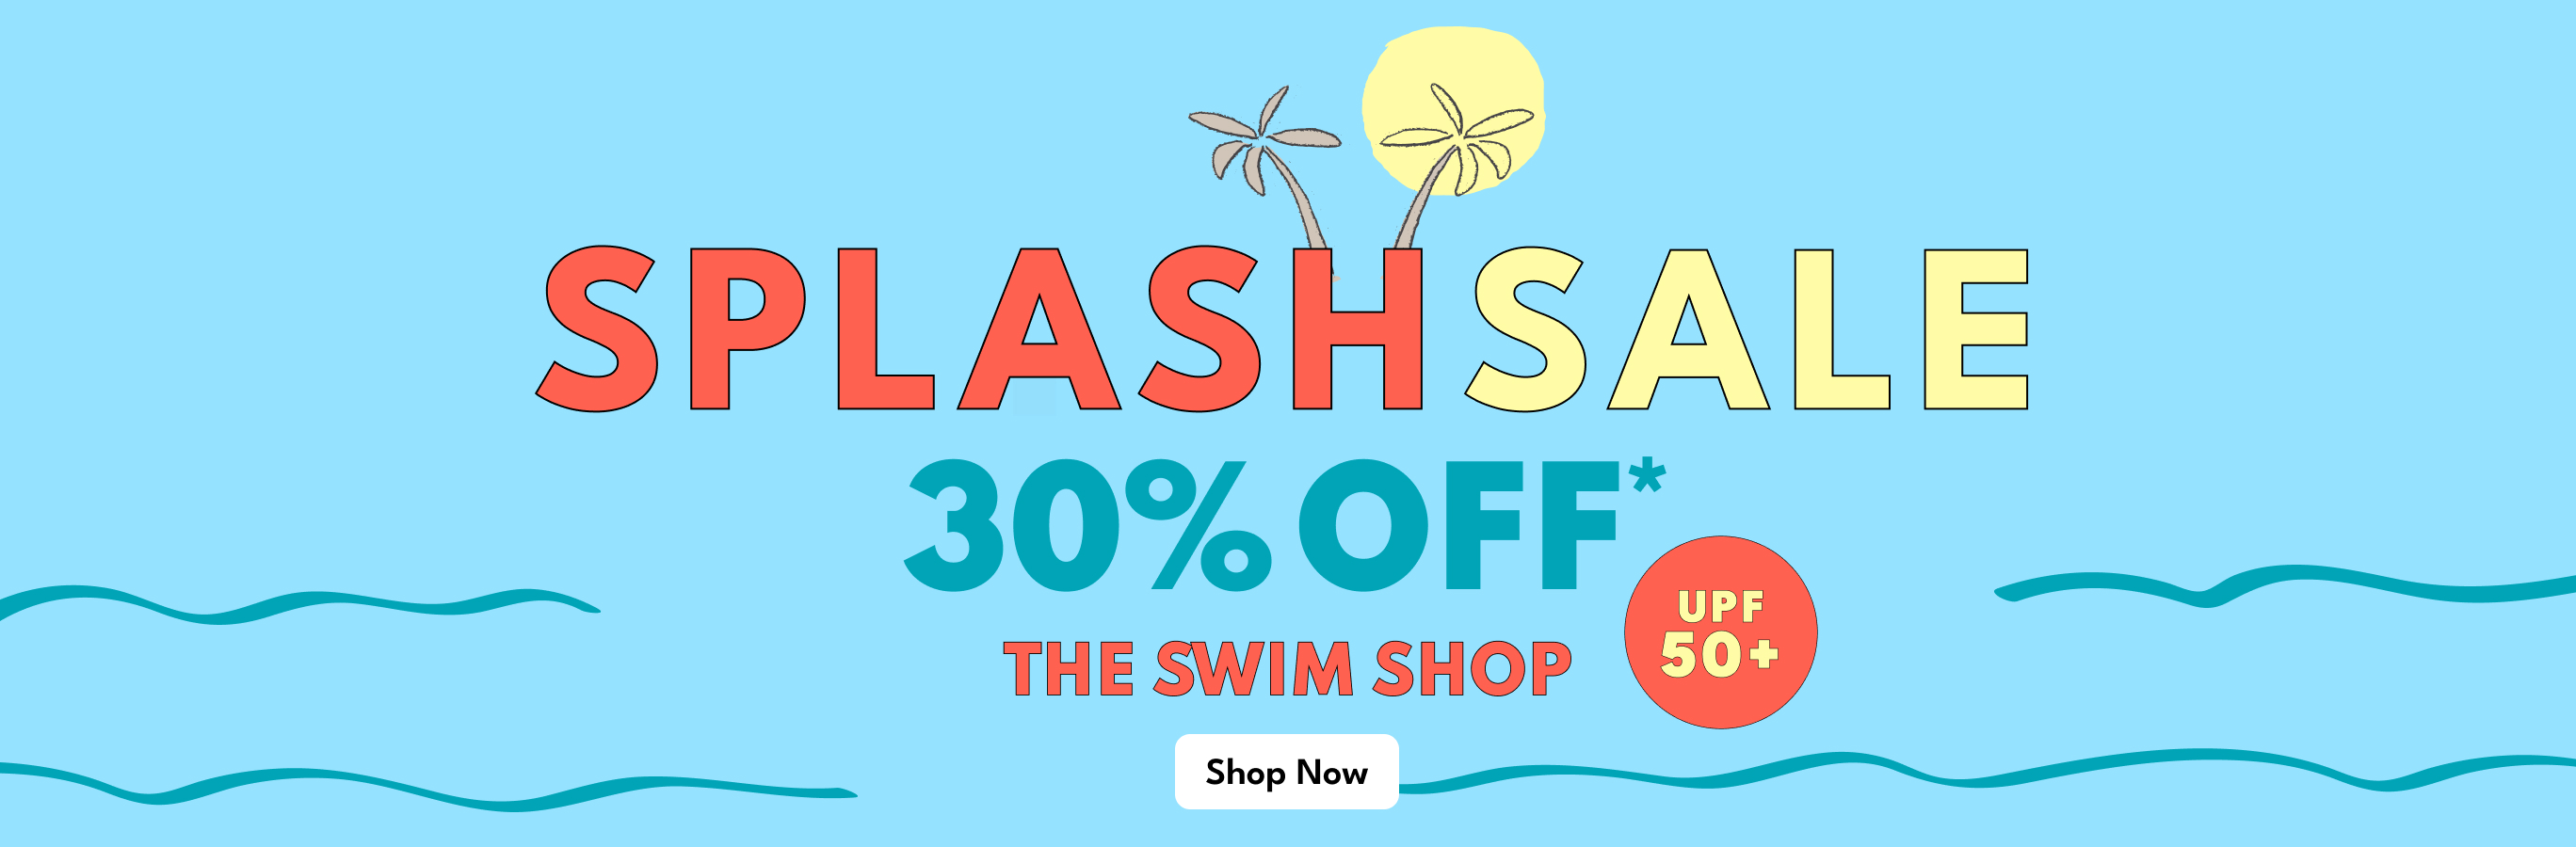 SPLASH SALE | 30% OFF* | THE SWIM SHOP | Shop Now | UPF 50+